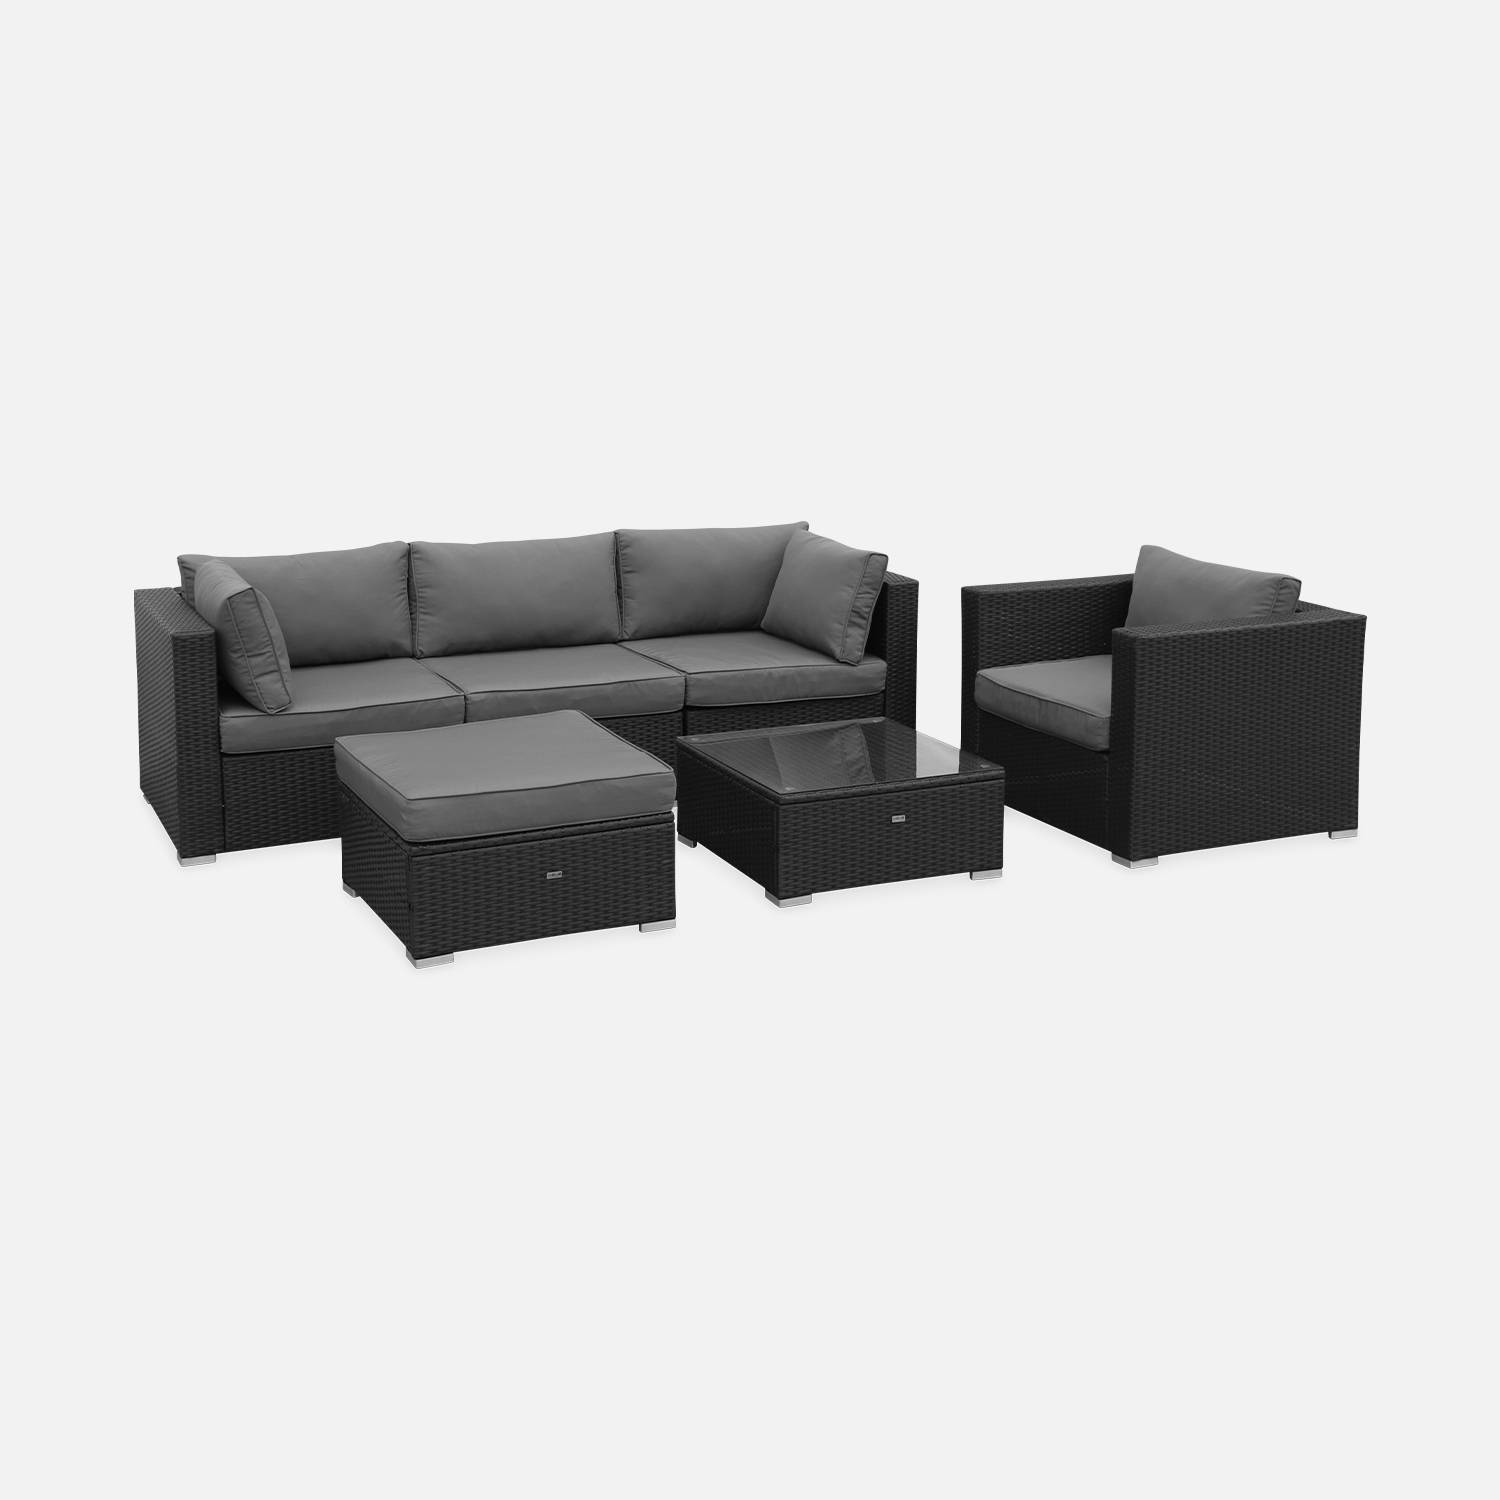 Muebles de jardin, Rattan sintetico, Negro Gris, 5 plazas | Caligari | sweeek